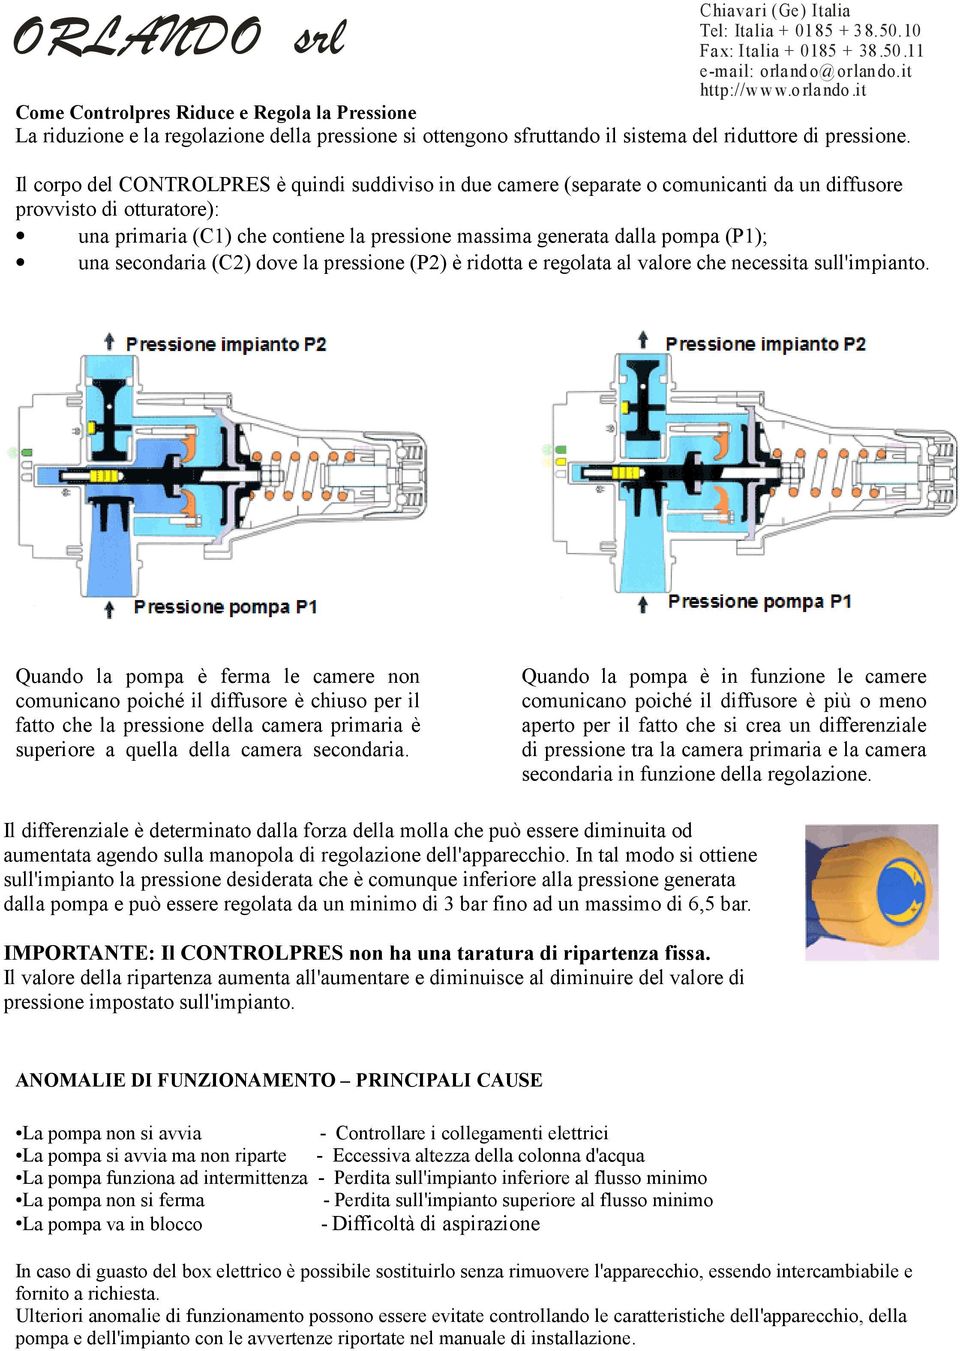 Il corpo del CONTROLPRES è quindi suddiviso in due camere (separate o comunicanti da un diffusore provvisto di otturatore): una primaria (C1) che contiene la pressione massima generata dalla pompa